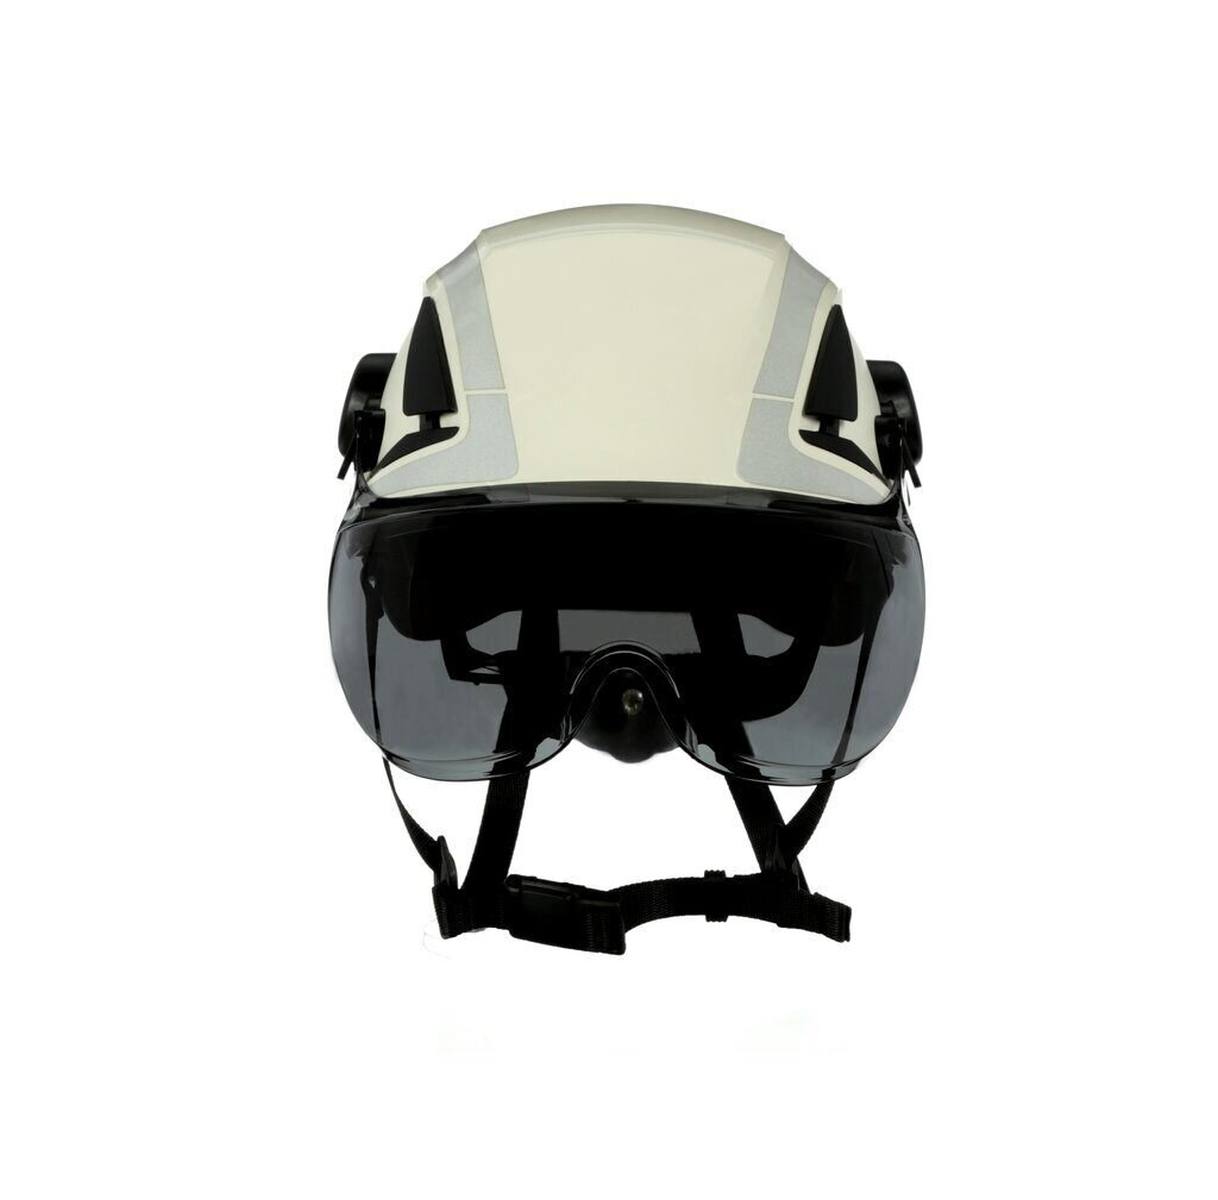 Visière courte 3M X5-SV02-CE pour les casques de protection X5000 et X5500, grise, traitement antibuée et anti-rayures, polycarbonate